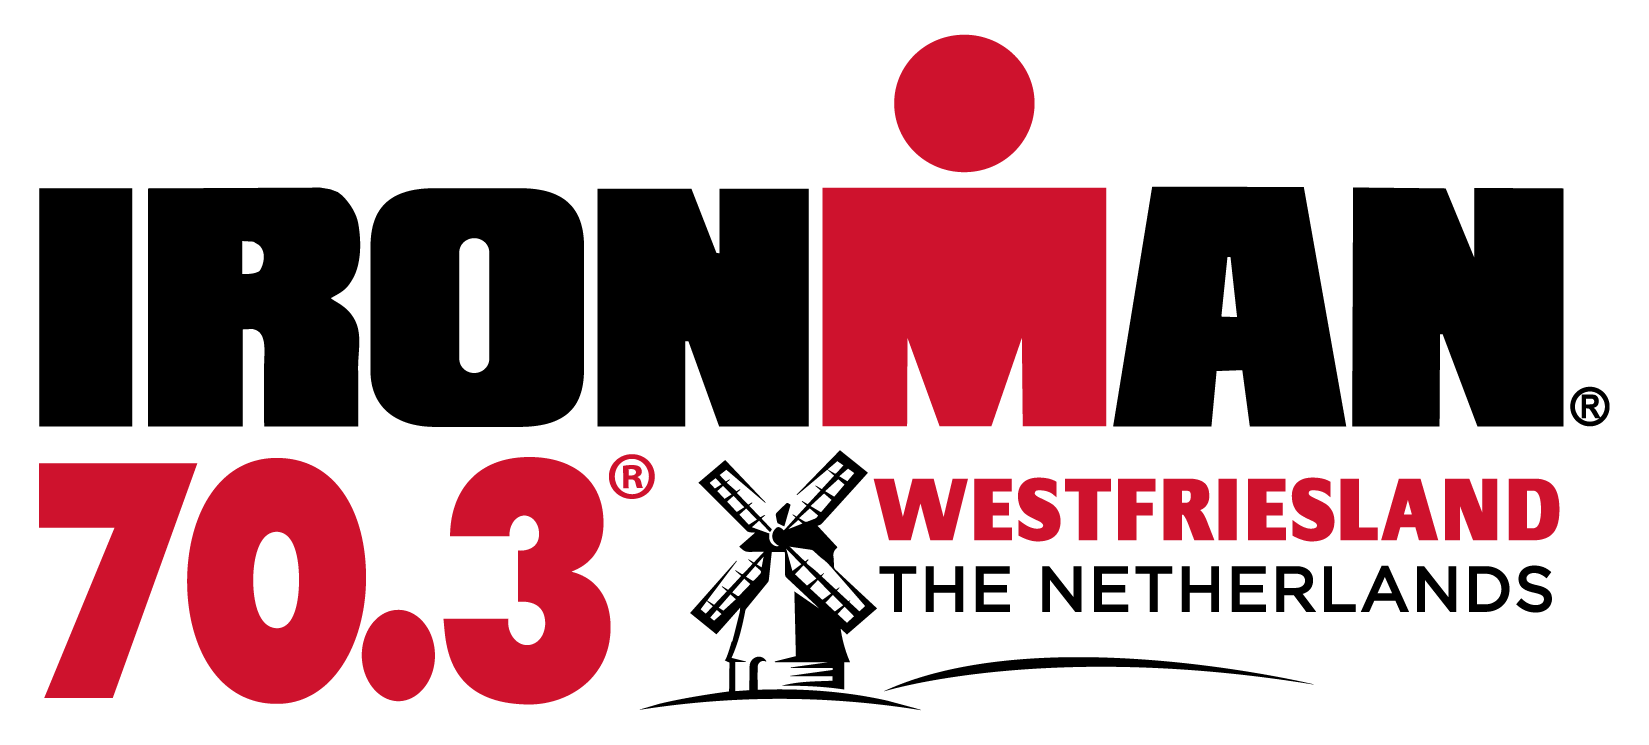 Official IRONMAN 70.3 Westfriesland race logo